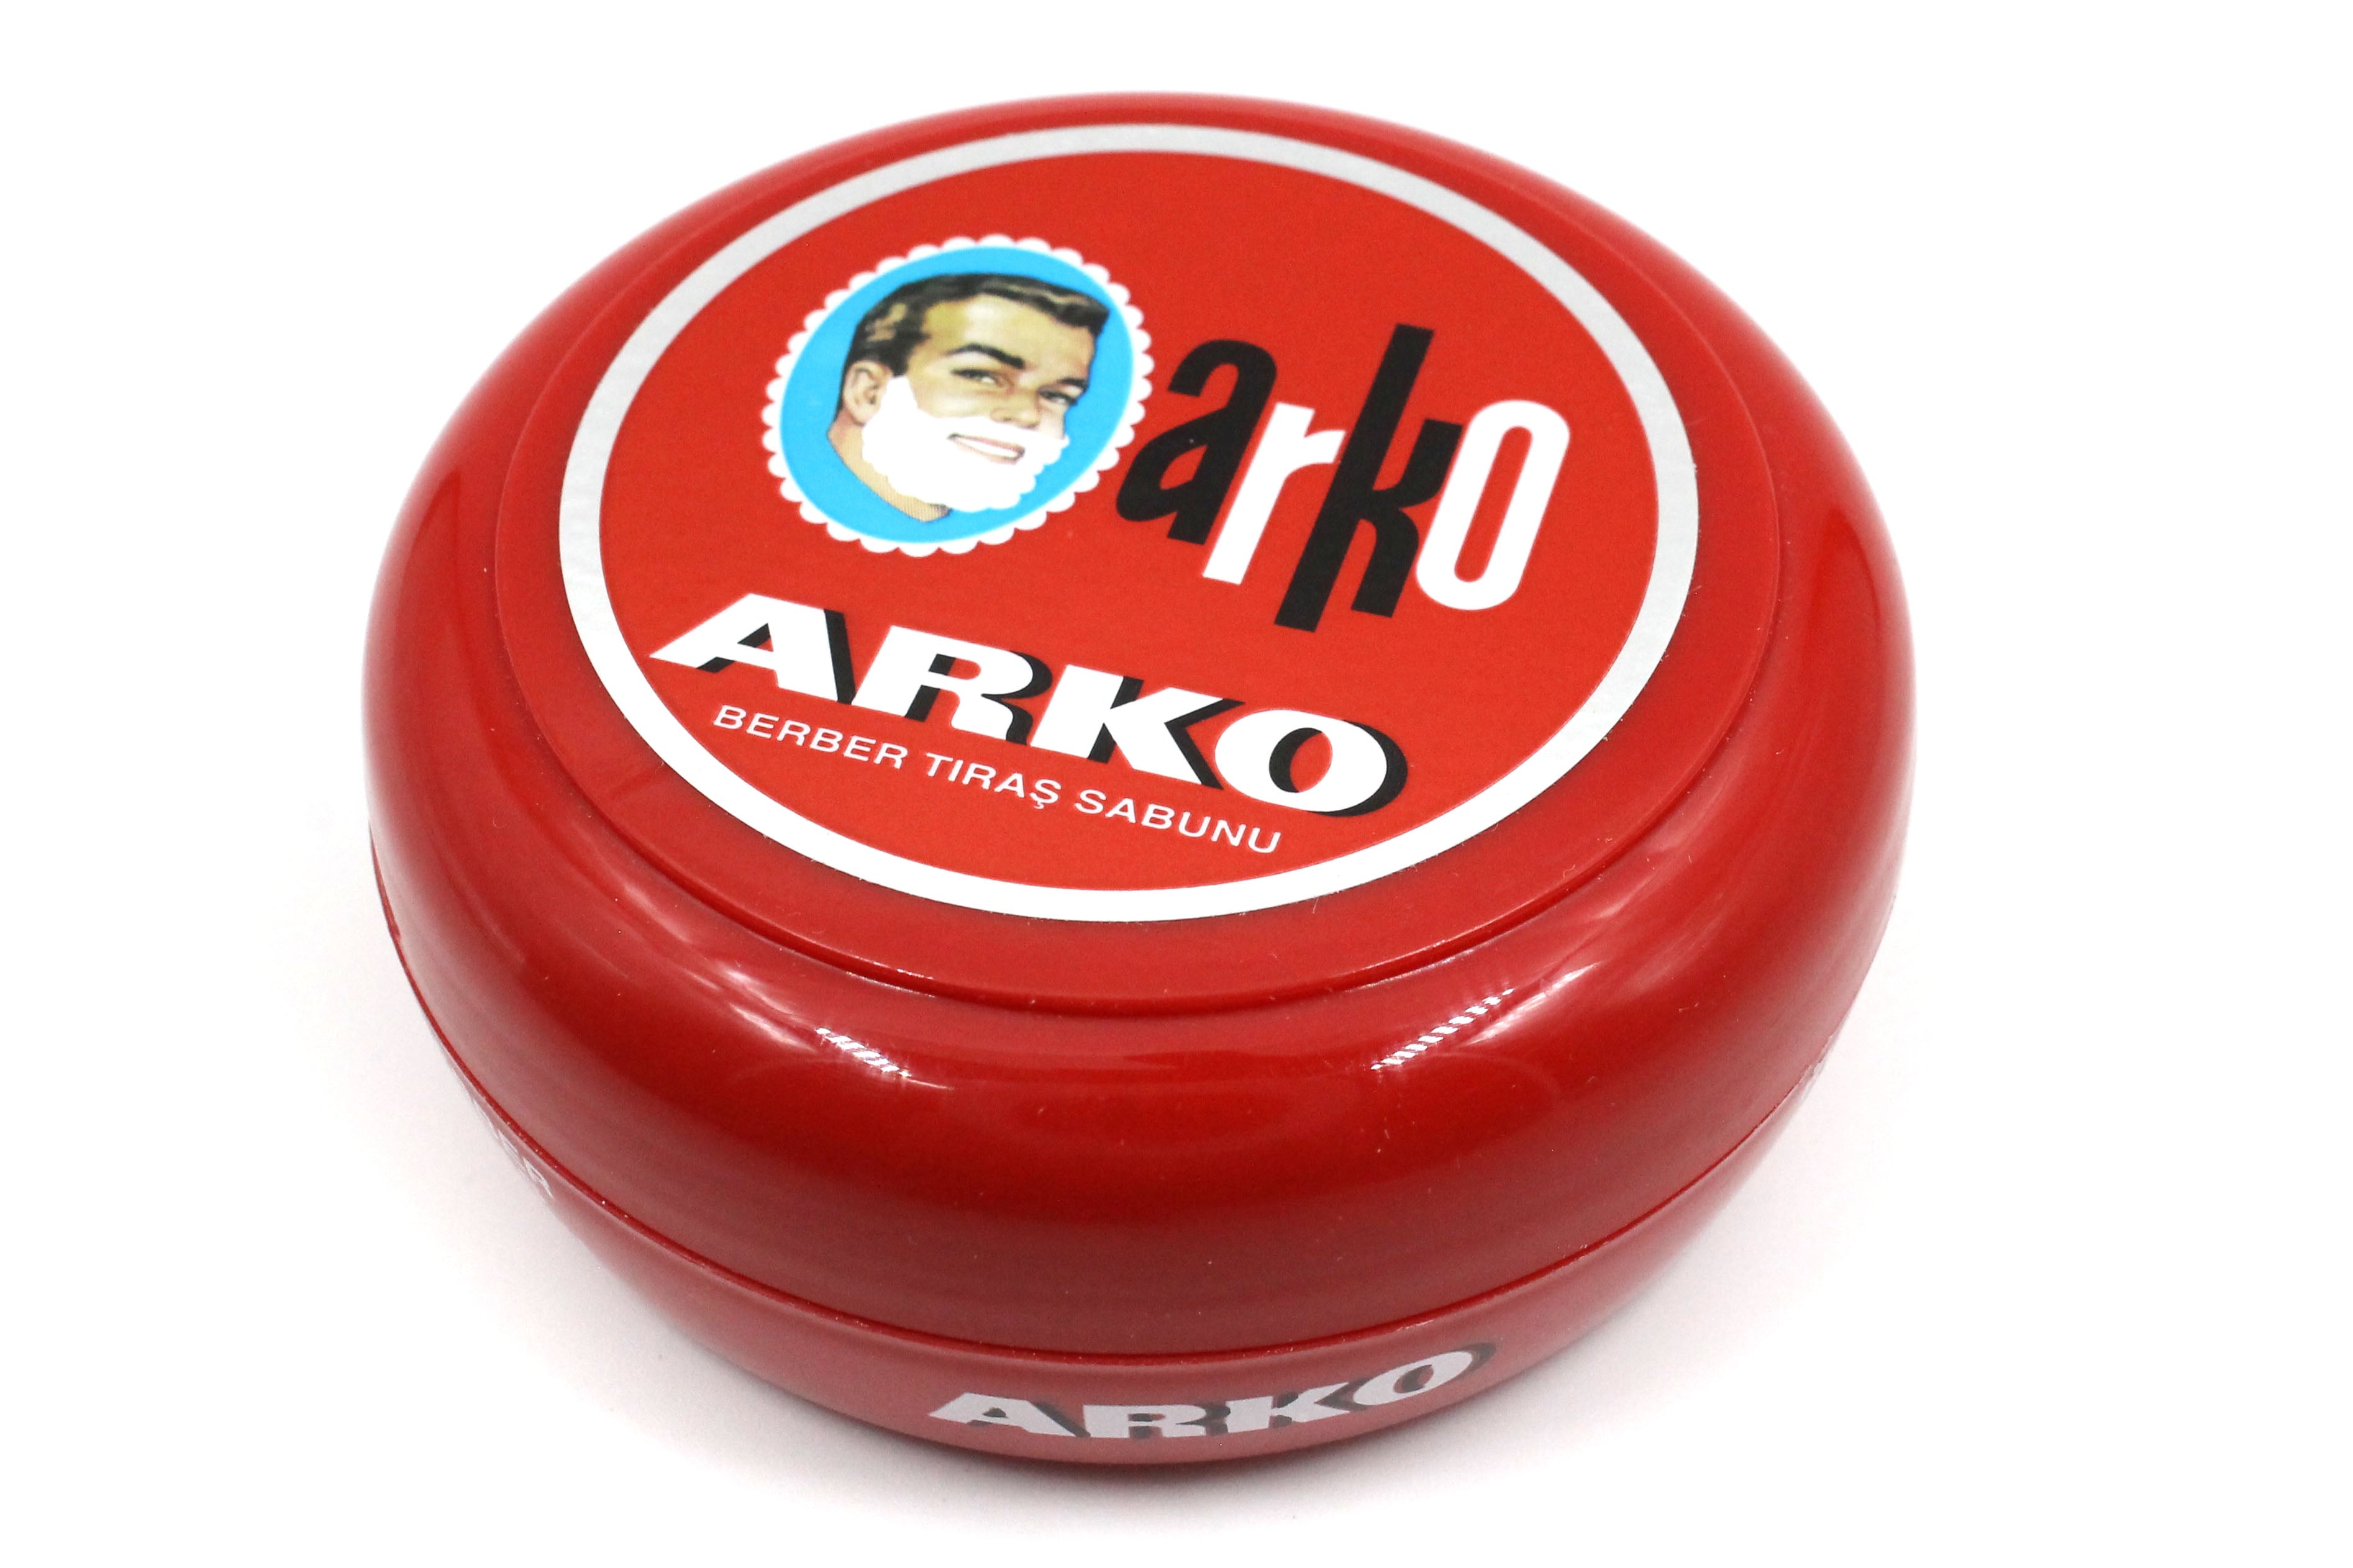 Arko Turkish Shaving Soap in Bowl - 90g